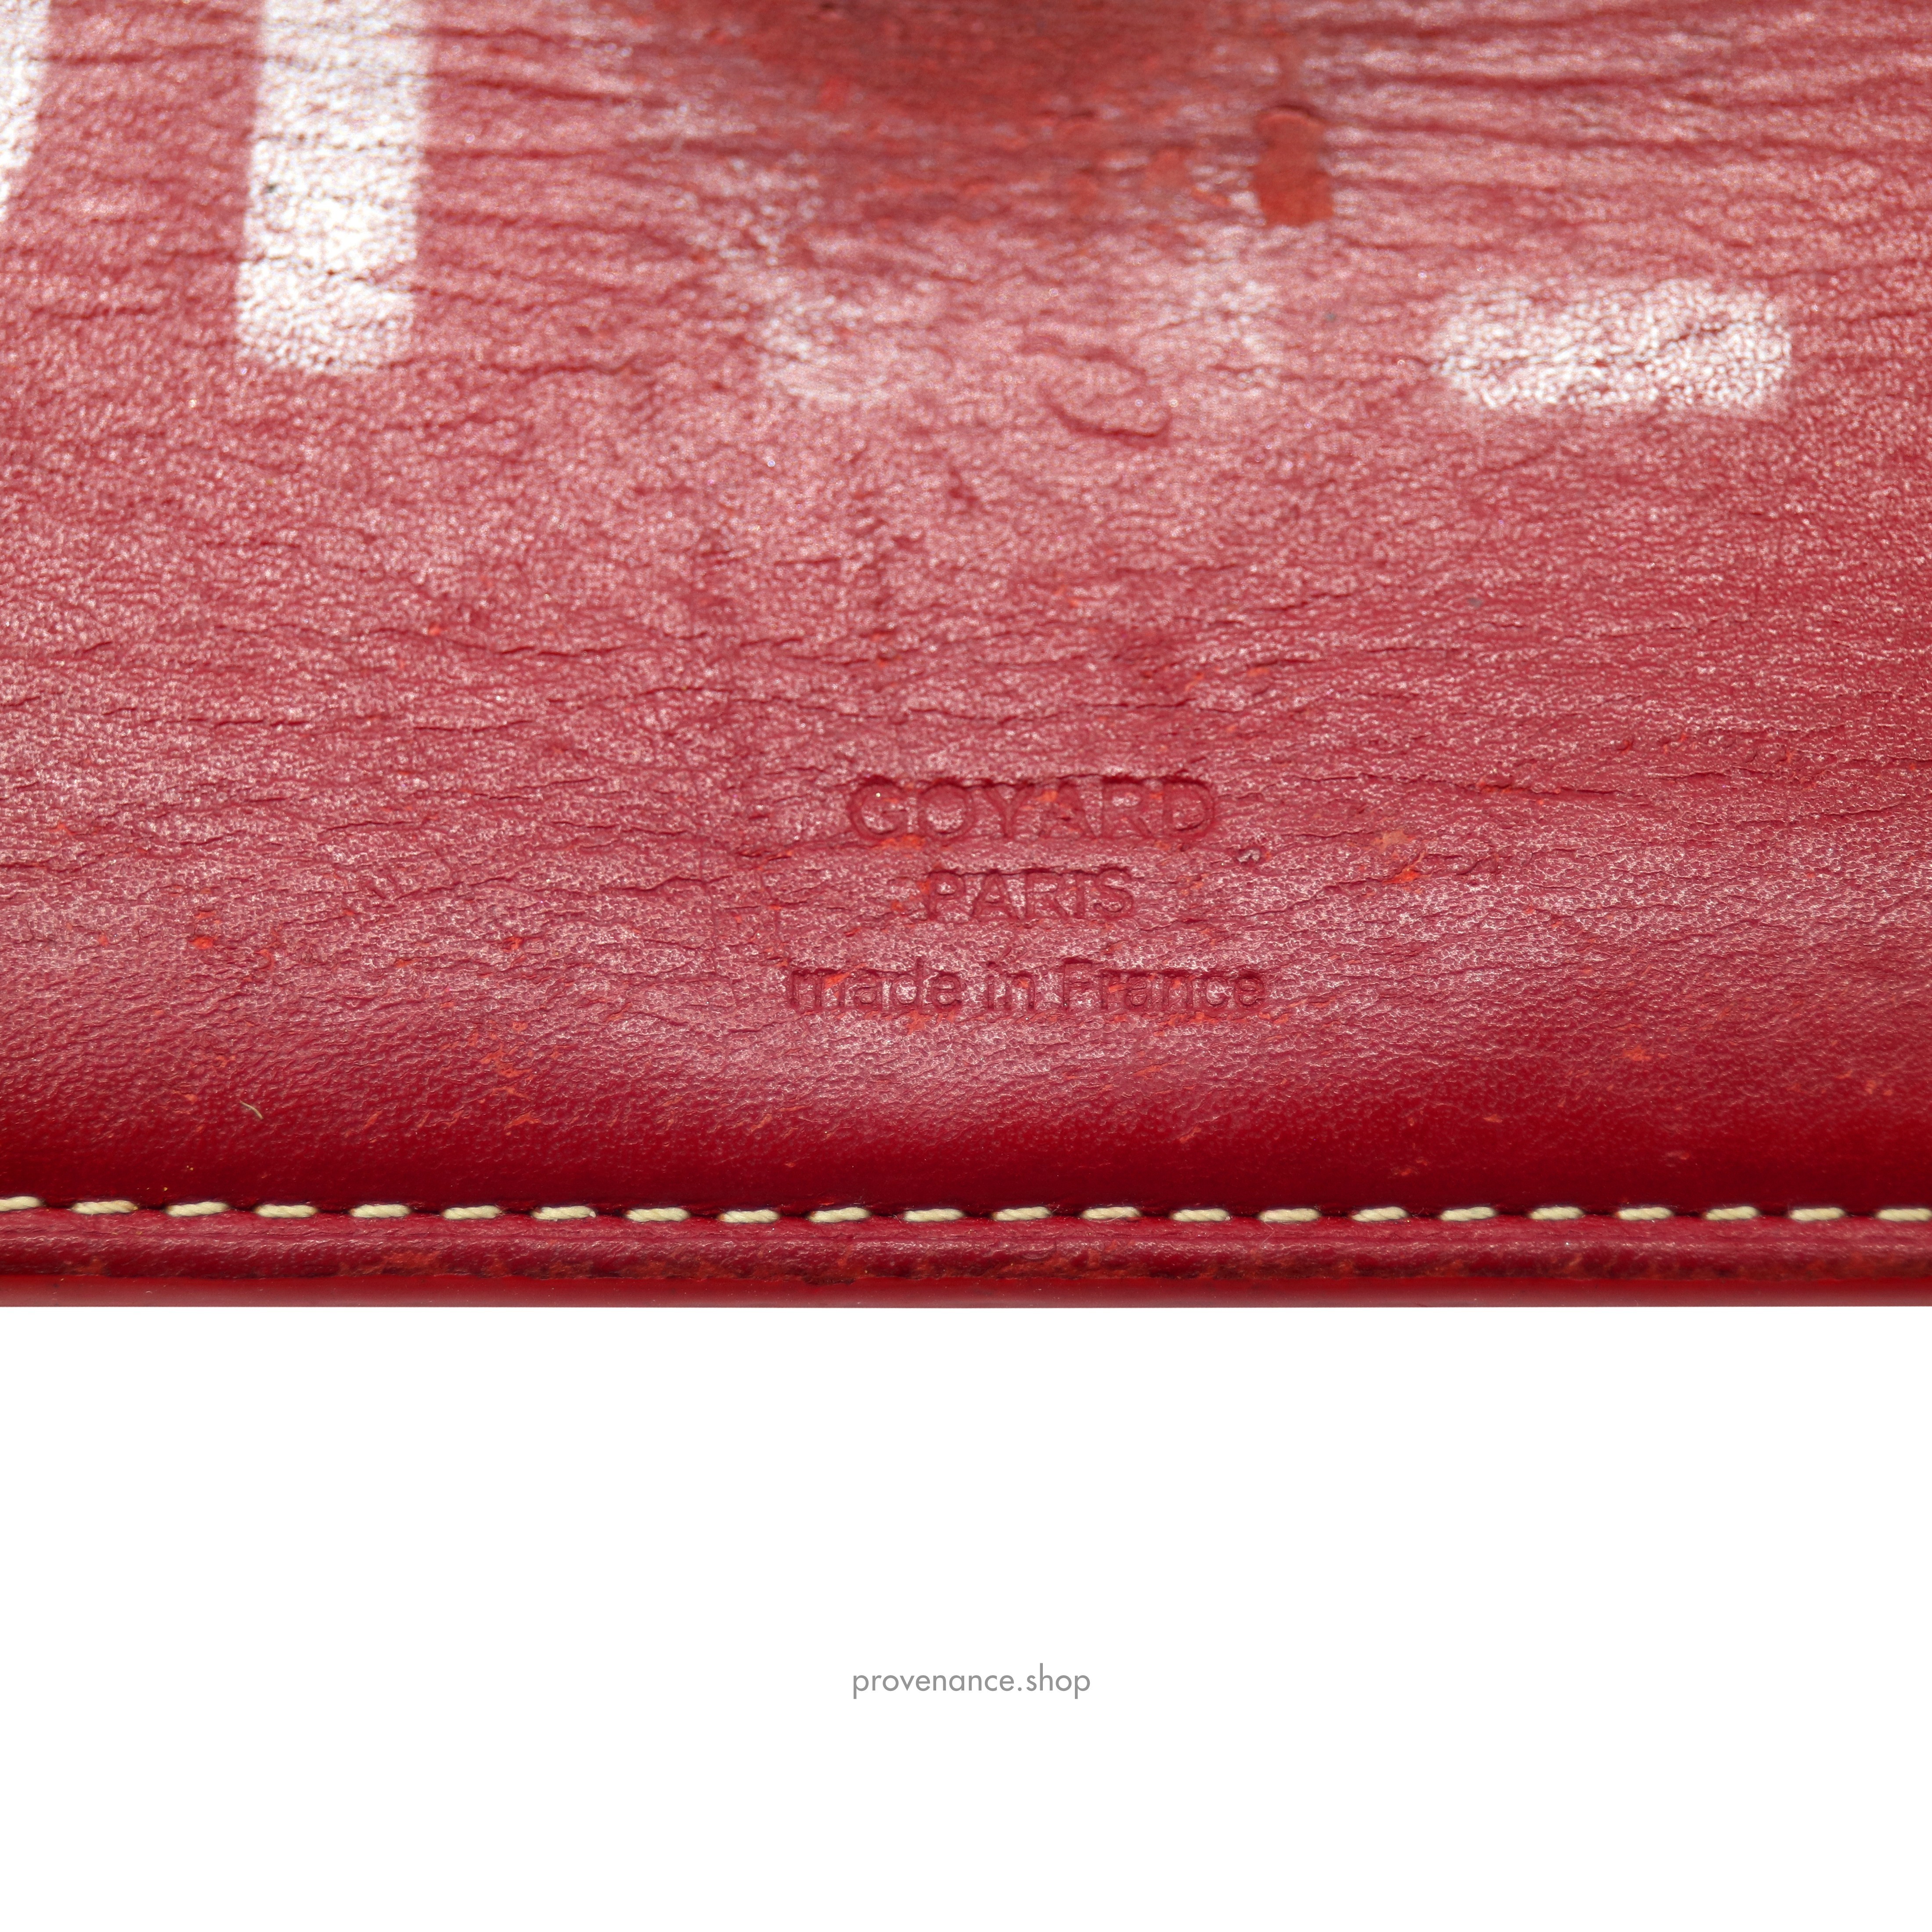 Richelieu Long Wallet - Red Goyardine - 6